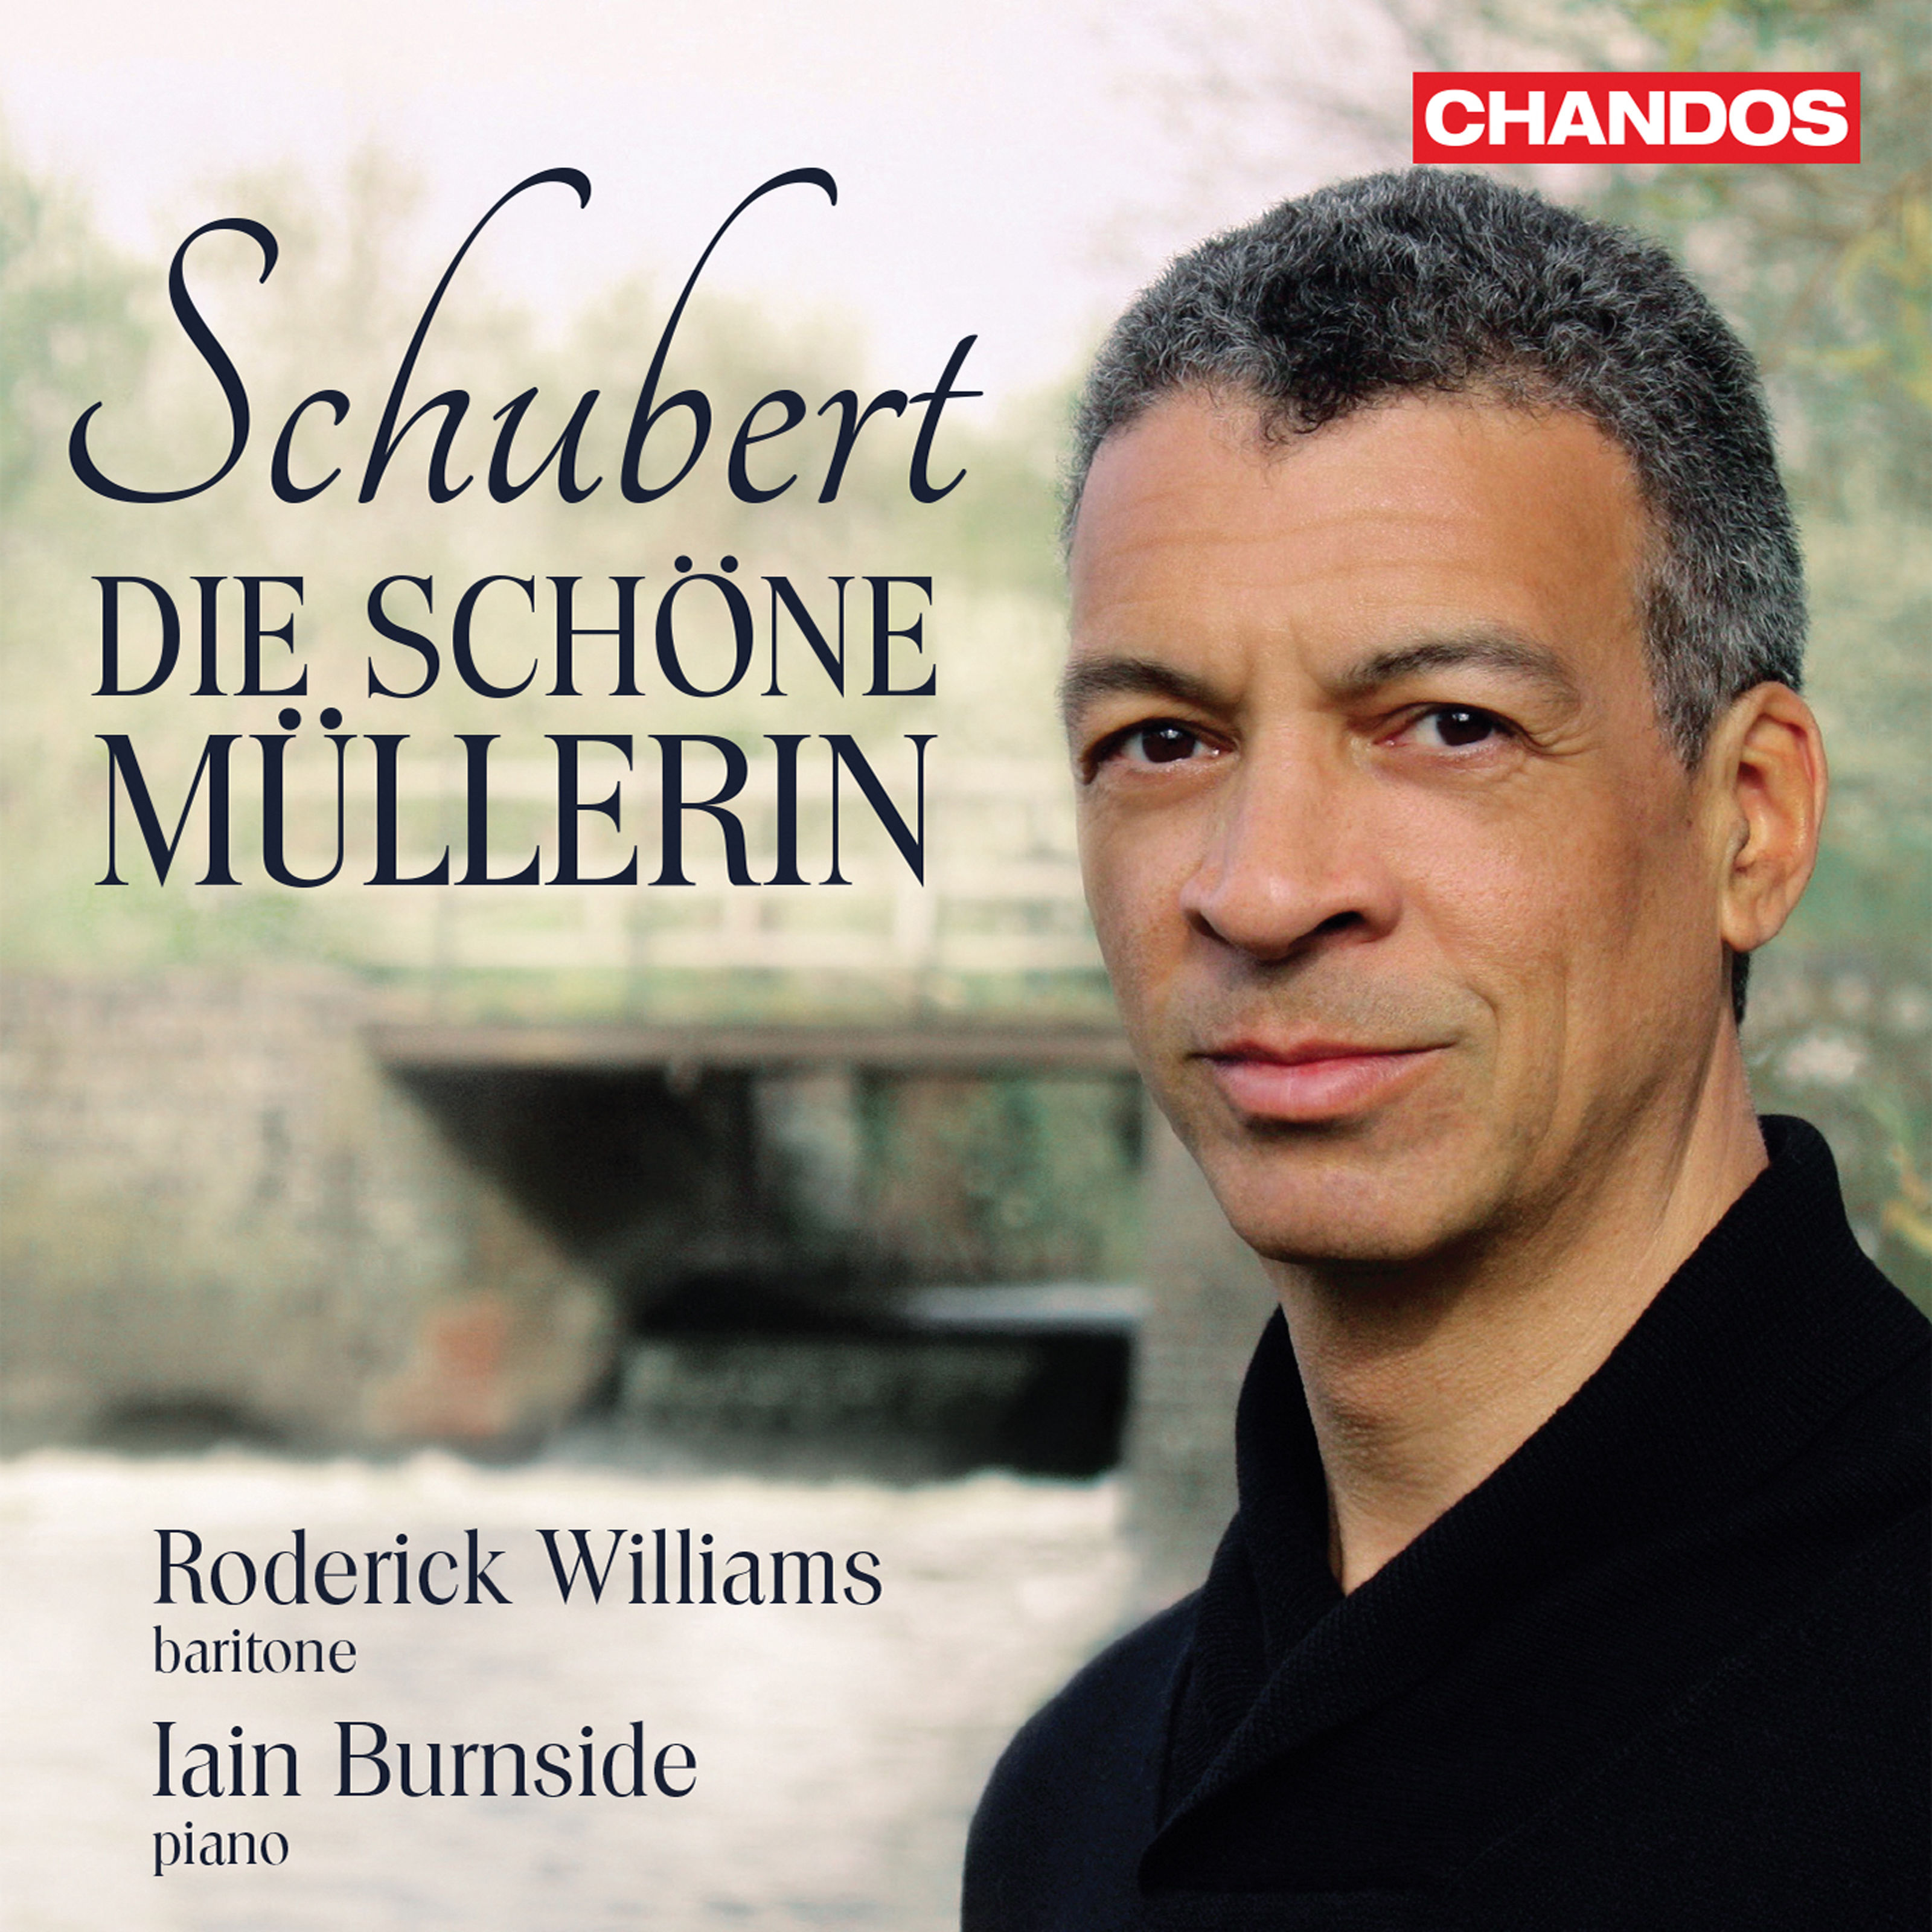 Roderick Williams & Iain Burnside - Schubert: Die schone Mullerin, Op. 25, D. 795 (2019) FLAC 24bit/96kHz]